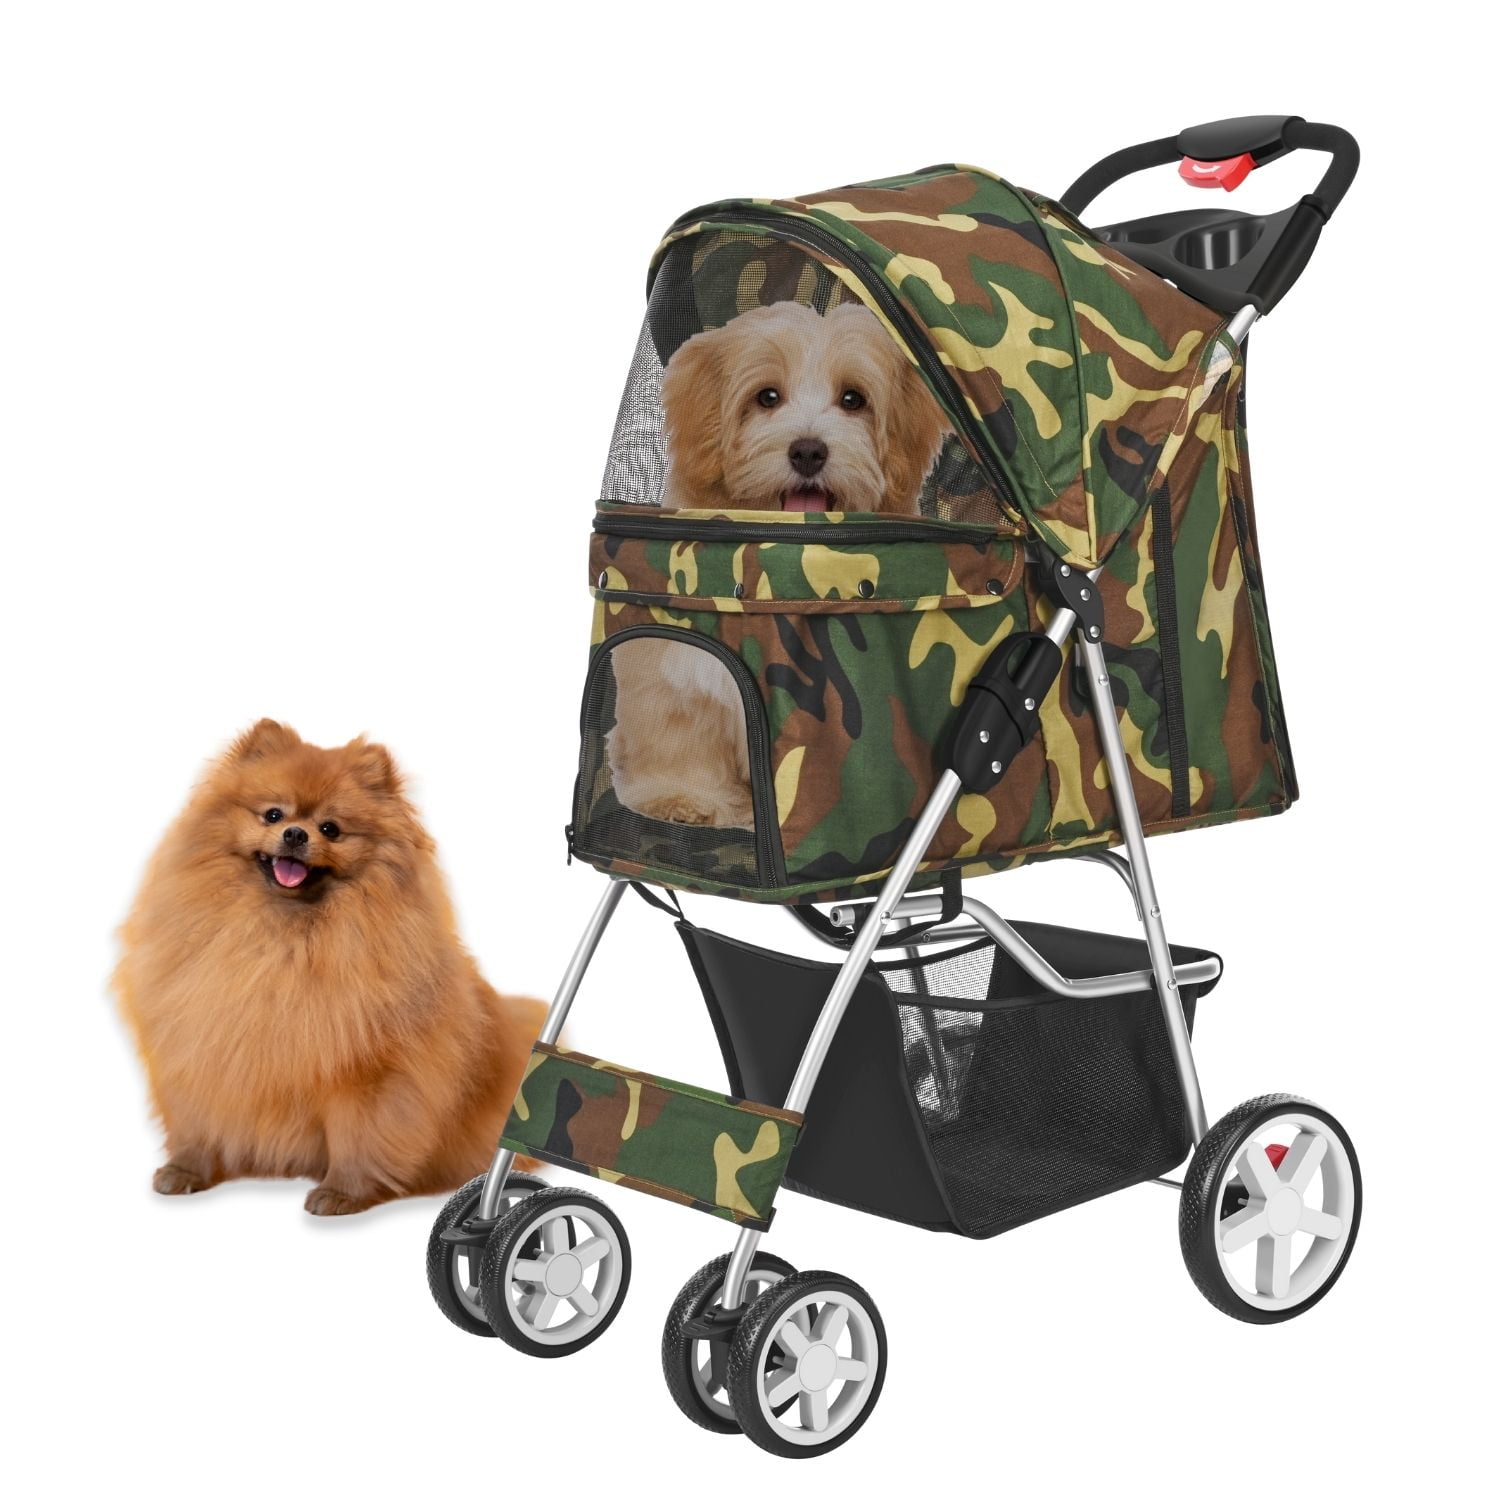 4 Wheels Pet Stroller 2 Cages Stroller Cat Dog Travel Folding Carrier Black